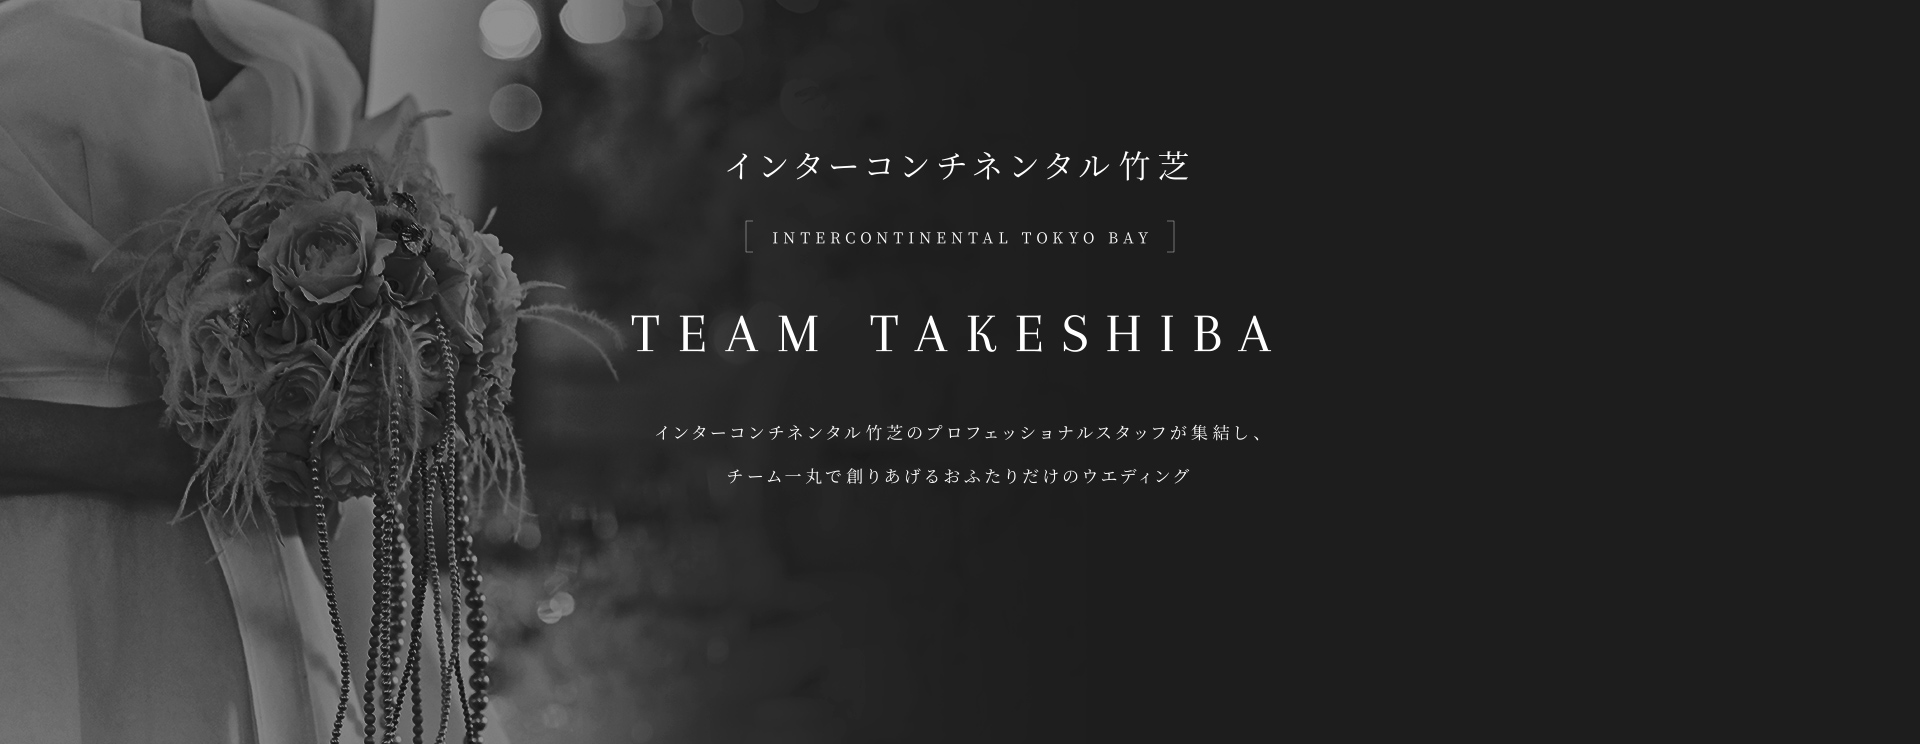 インターコンチネンタル竹芝 INTERCONTINENTAL TOKYO BAY TEAM TAKESHIBA インターコンチネンタル竹芝のプロフェッショナルスタッフが集結し、チーム一丸で創りあげるおふたりだけのウェディングスタイル